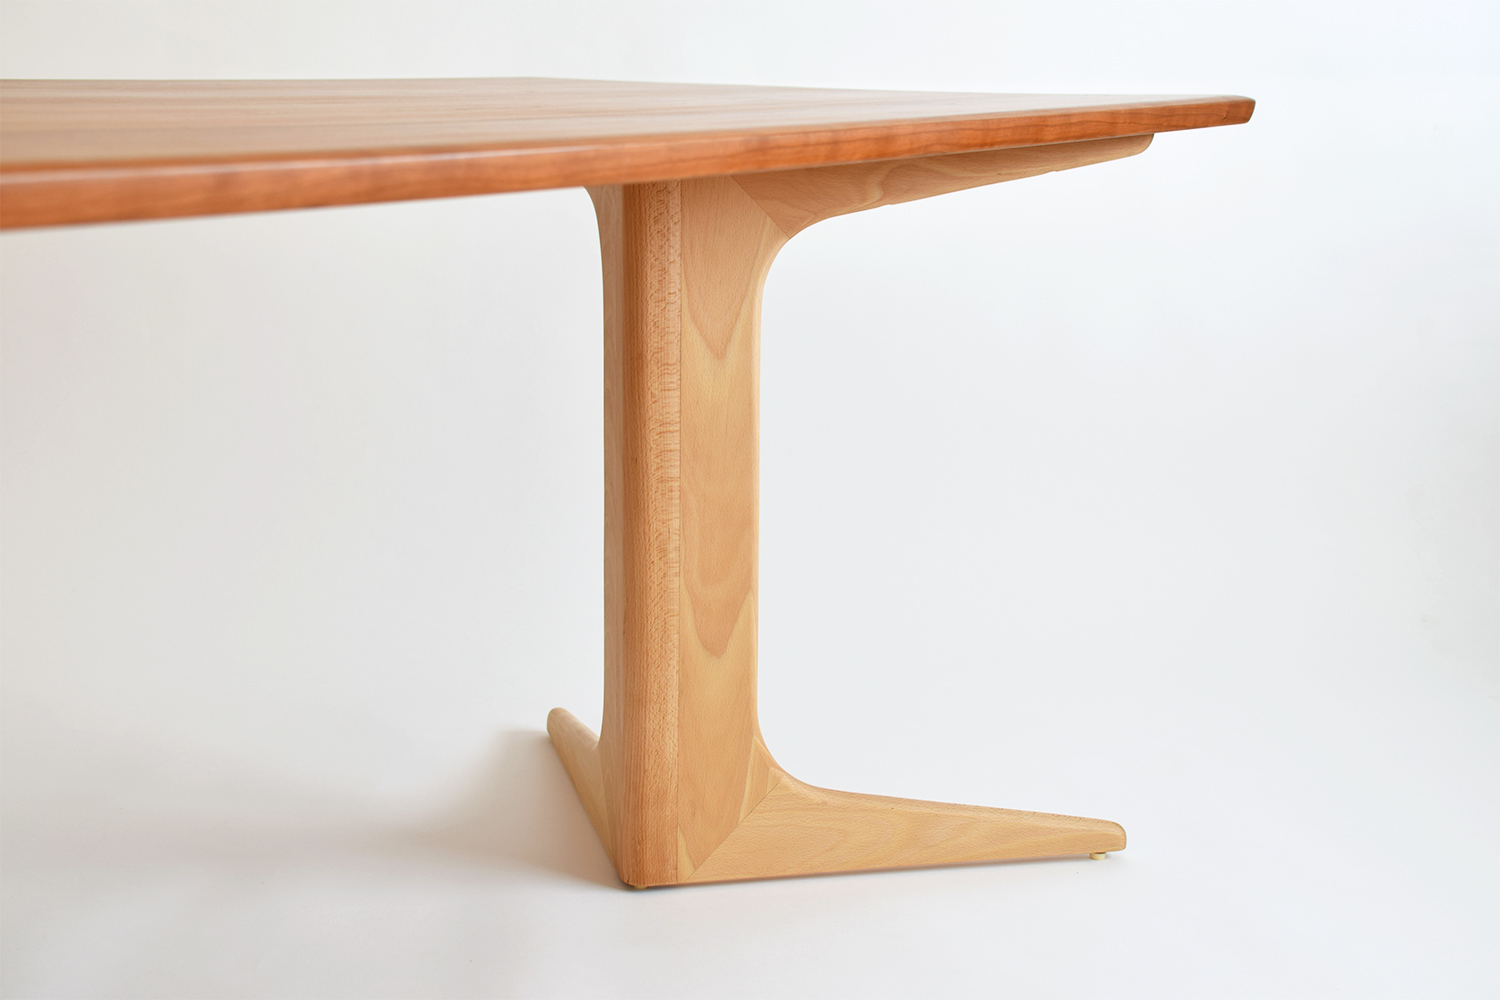 ベンチに最適なおしゃれなデザインの無垢ダイニングテーブル